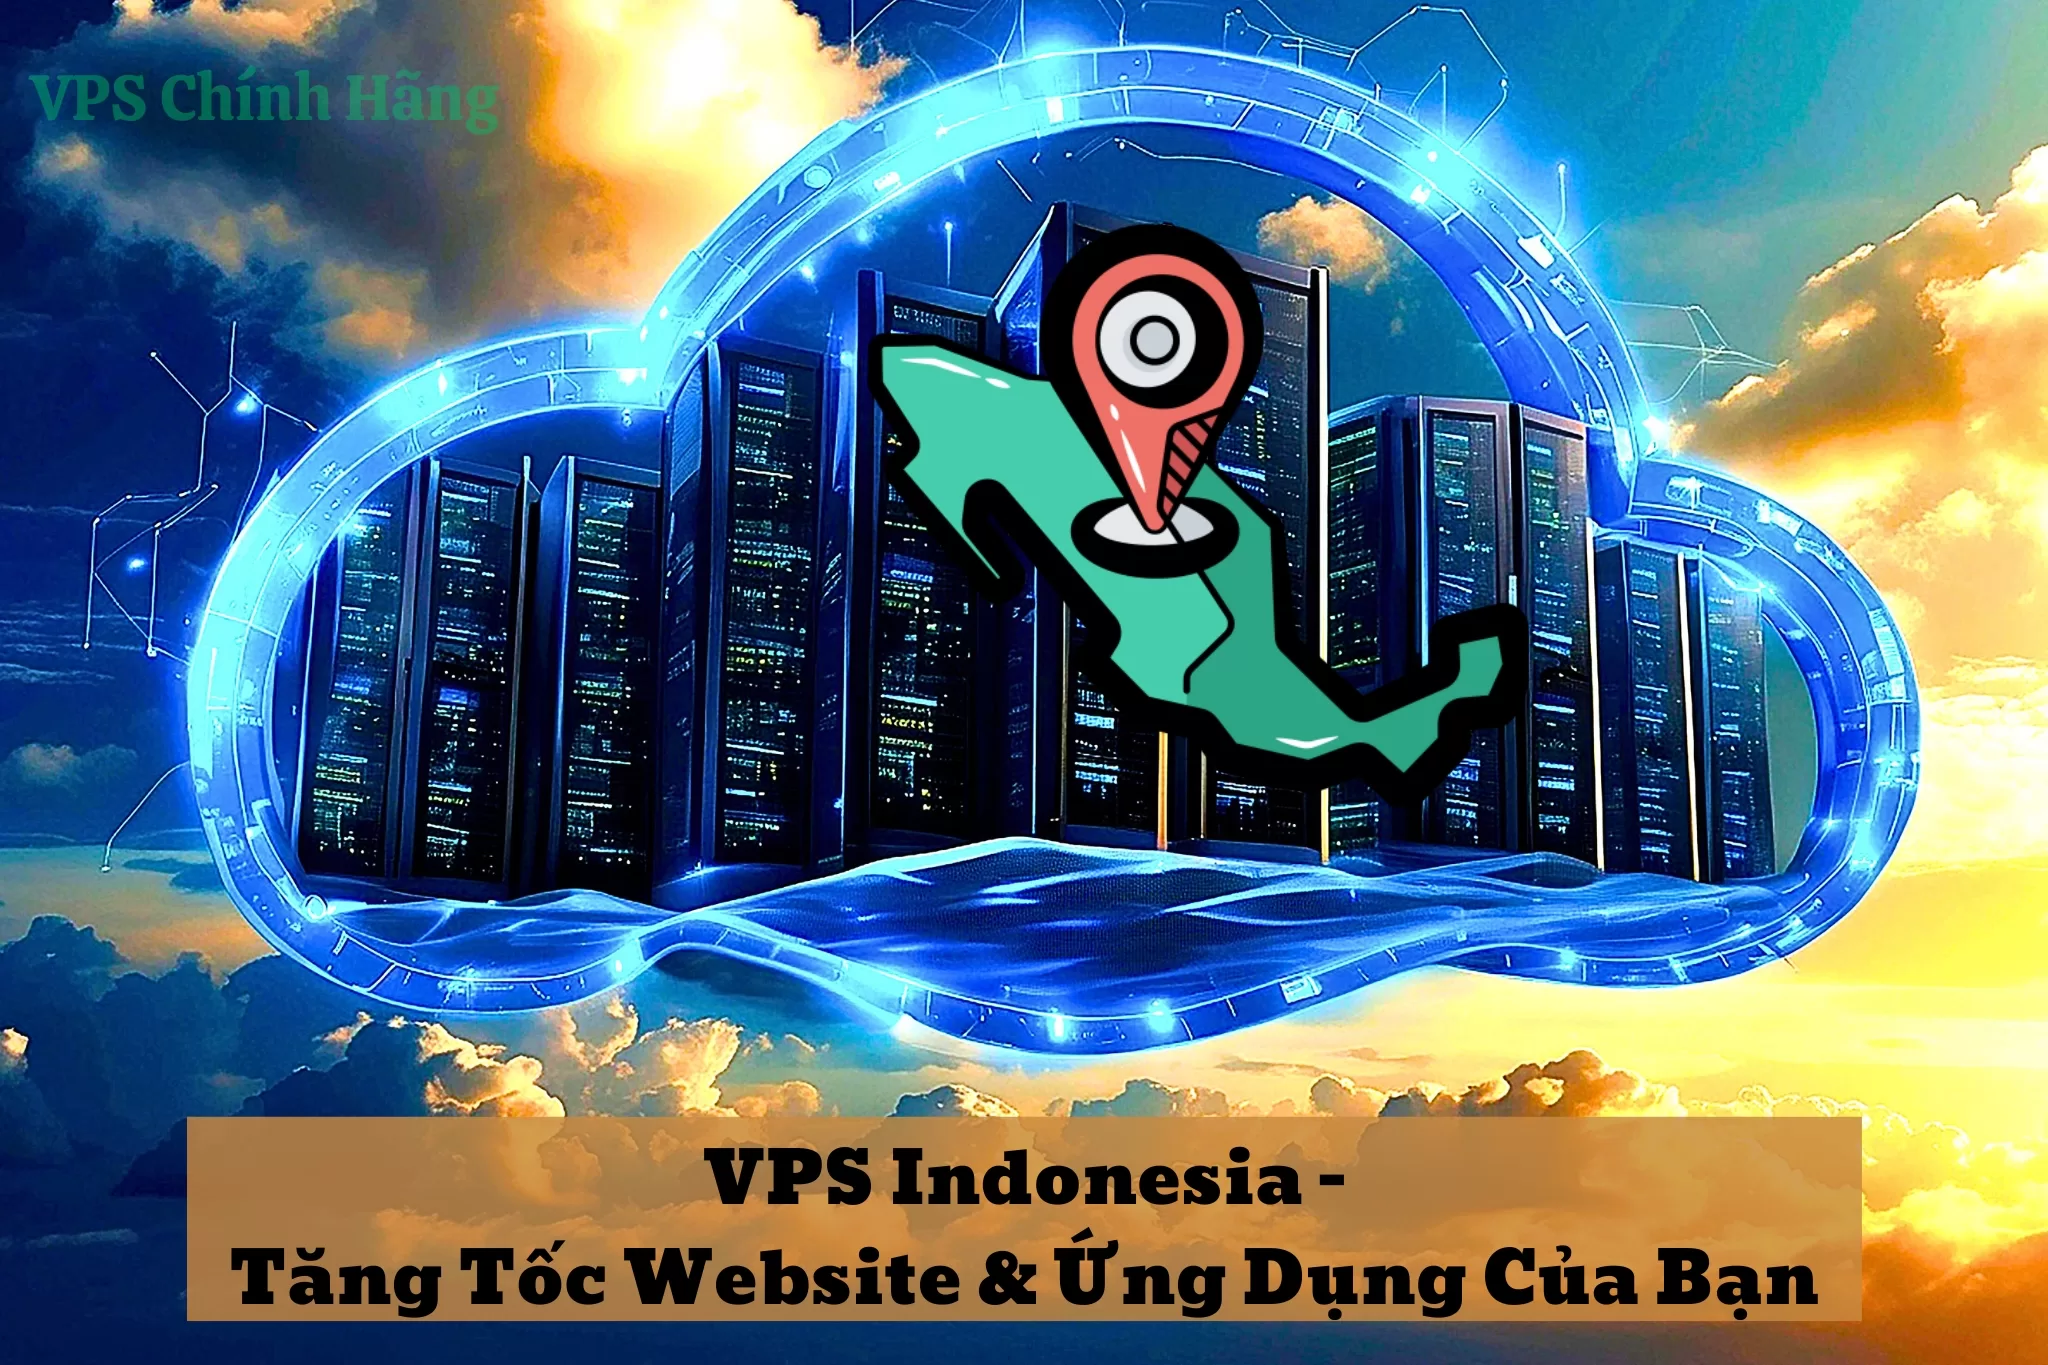 VPS Indonesia - Tăng Tốc Website & Ứng Dụng Của Bạn